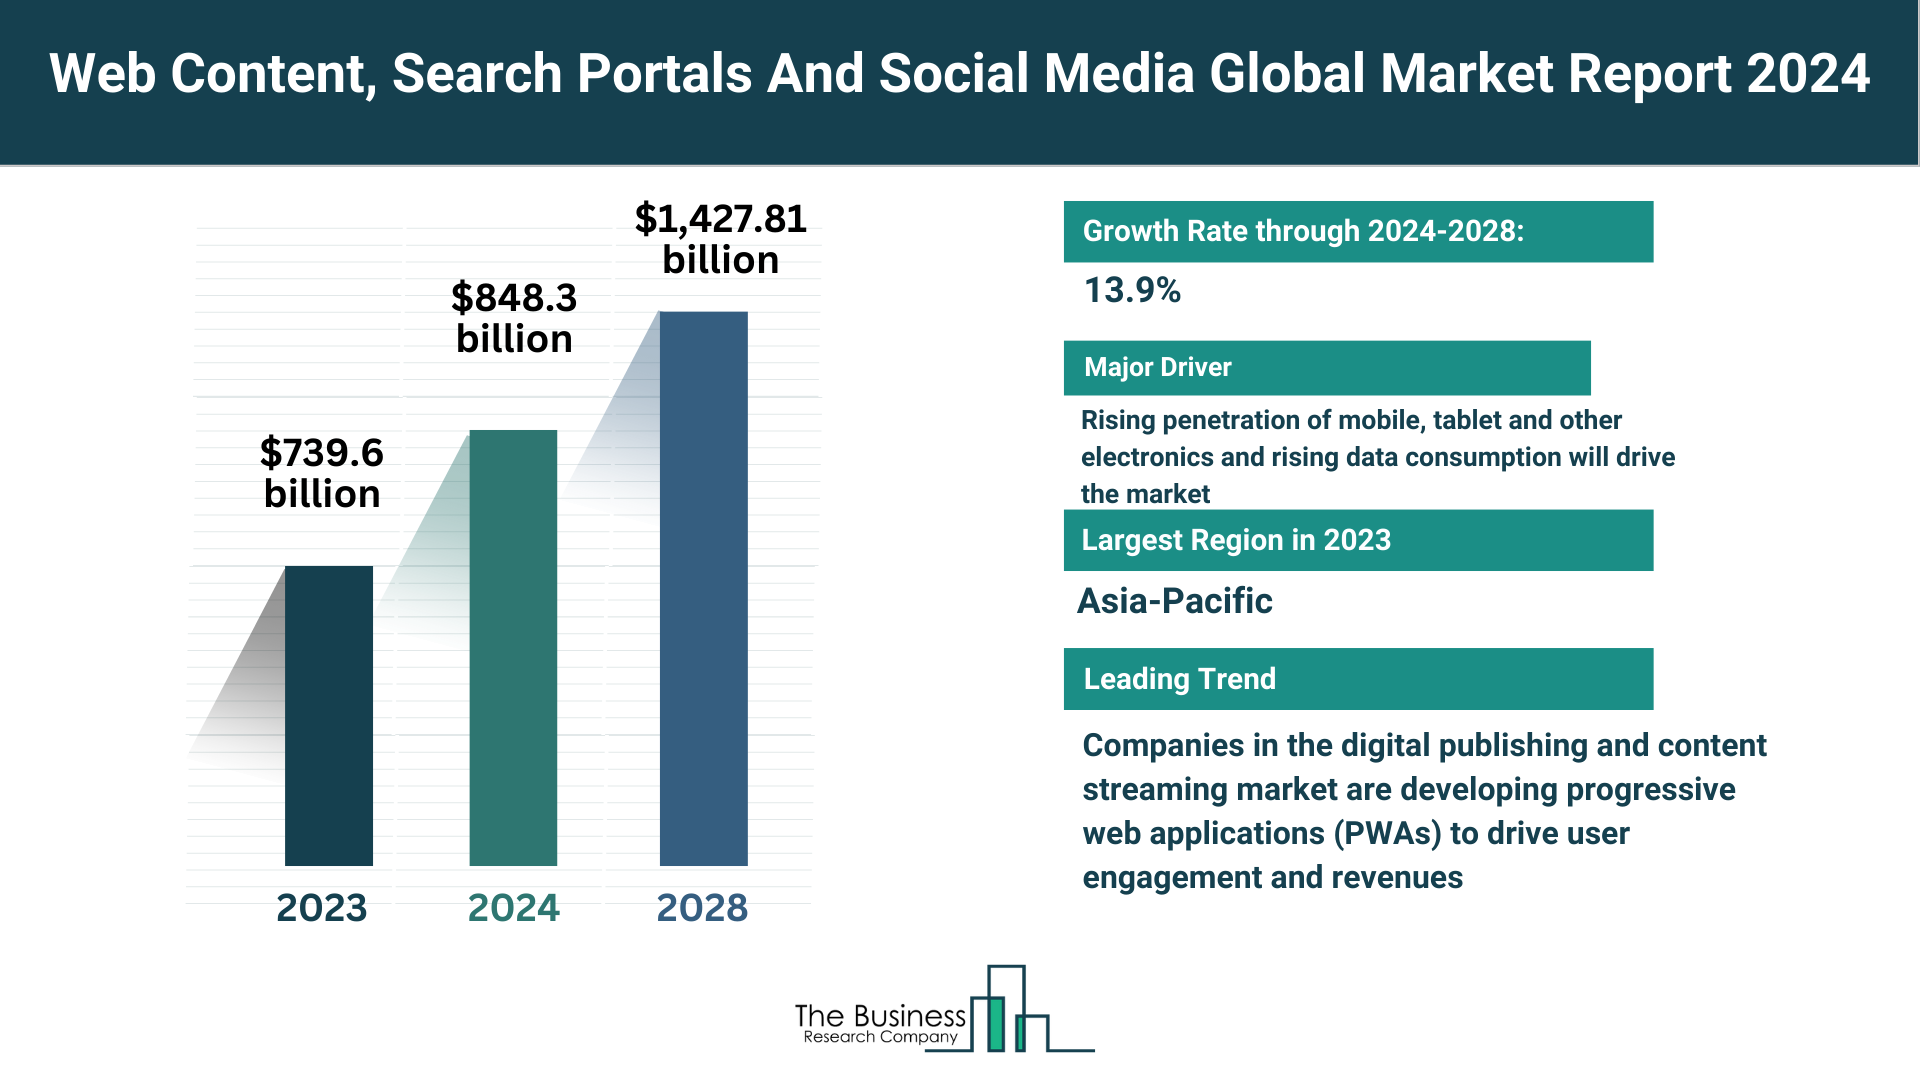 Global Web Content, Search Portals And Social Media Market